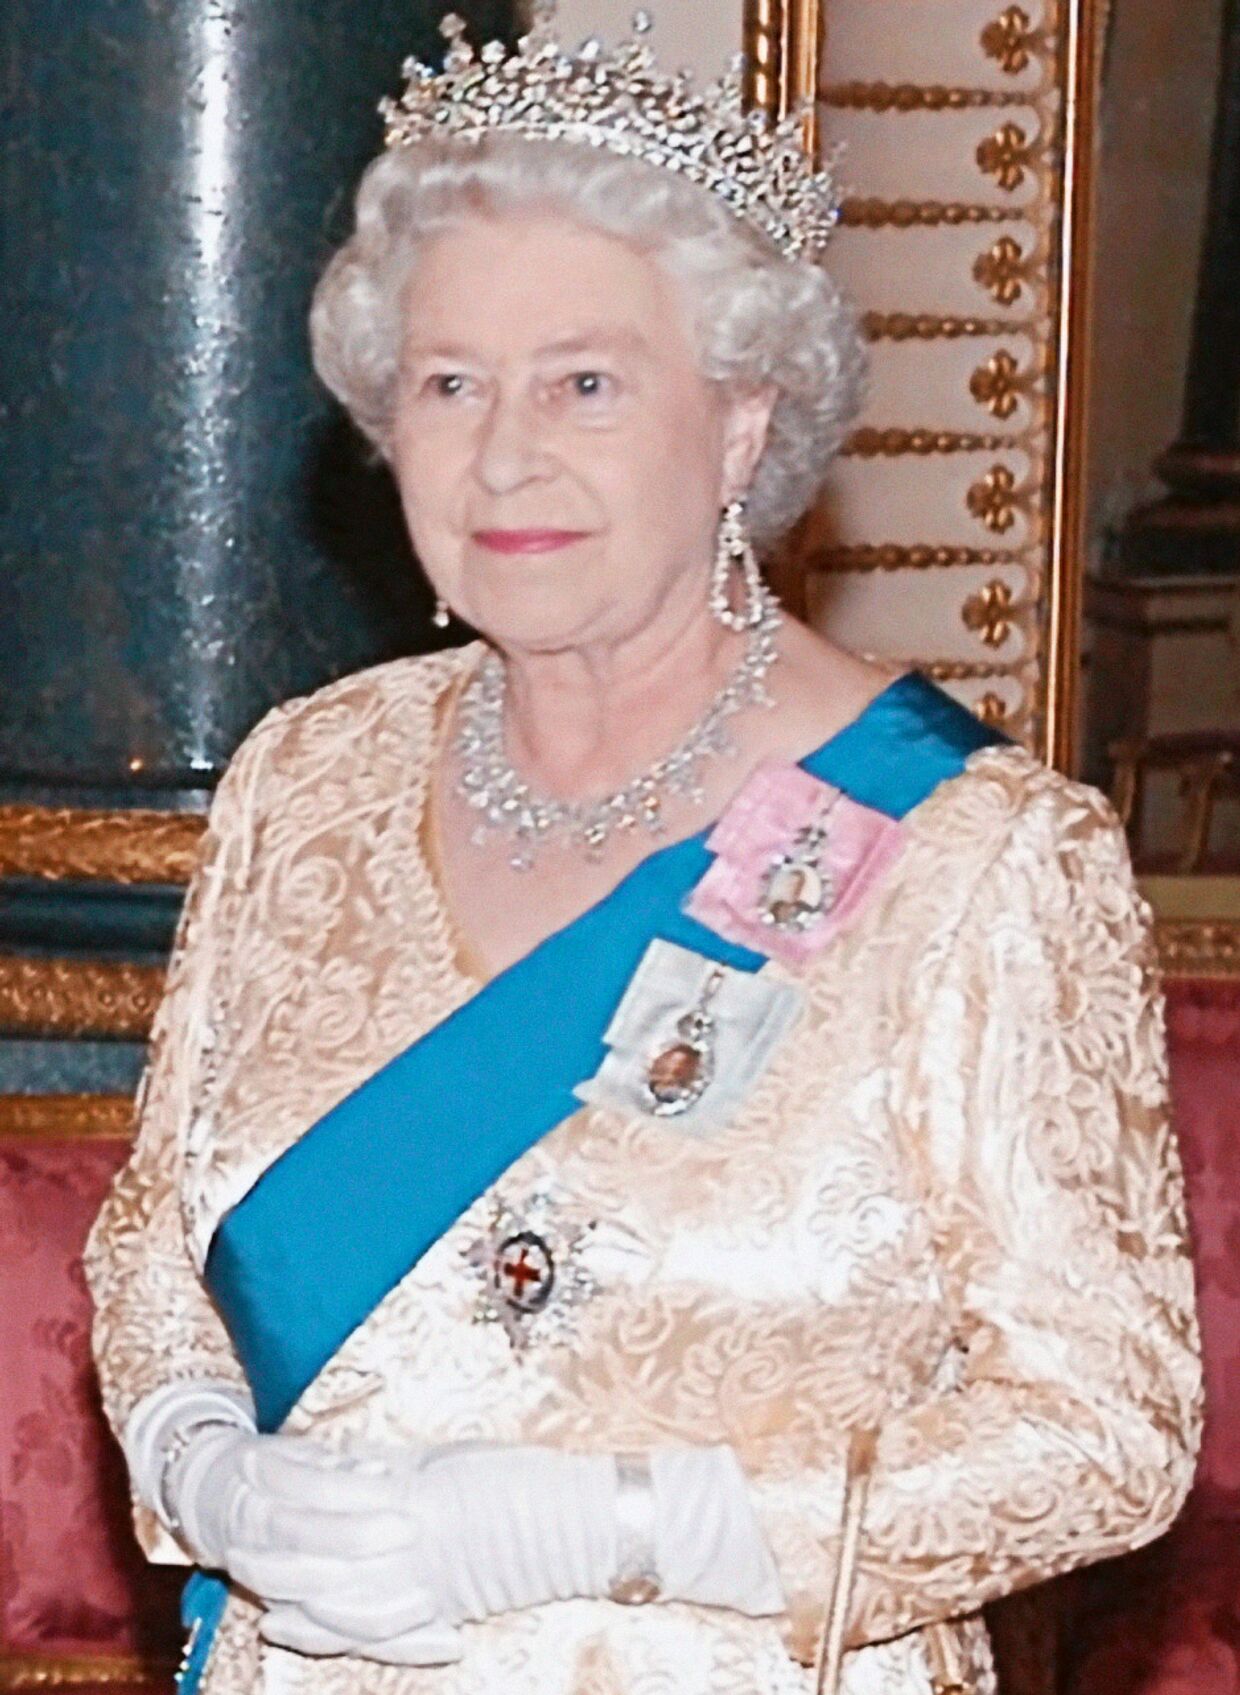 Королева Великобритании Елизавета II 